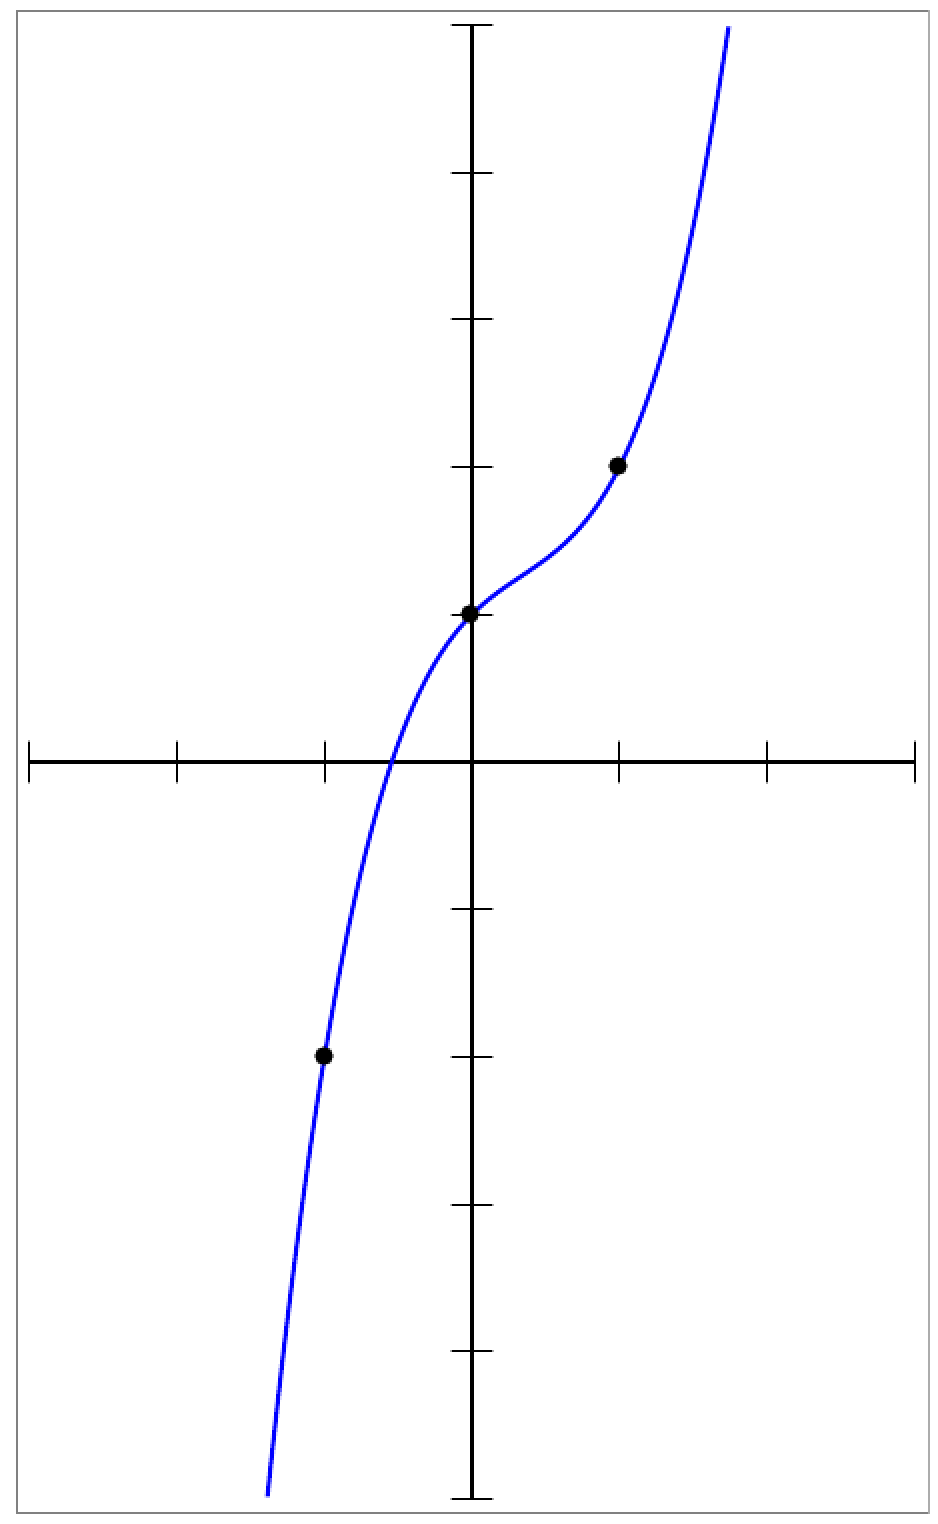 courbe représentative d'une fonction